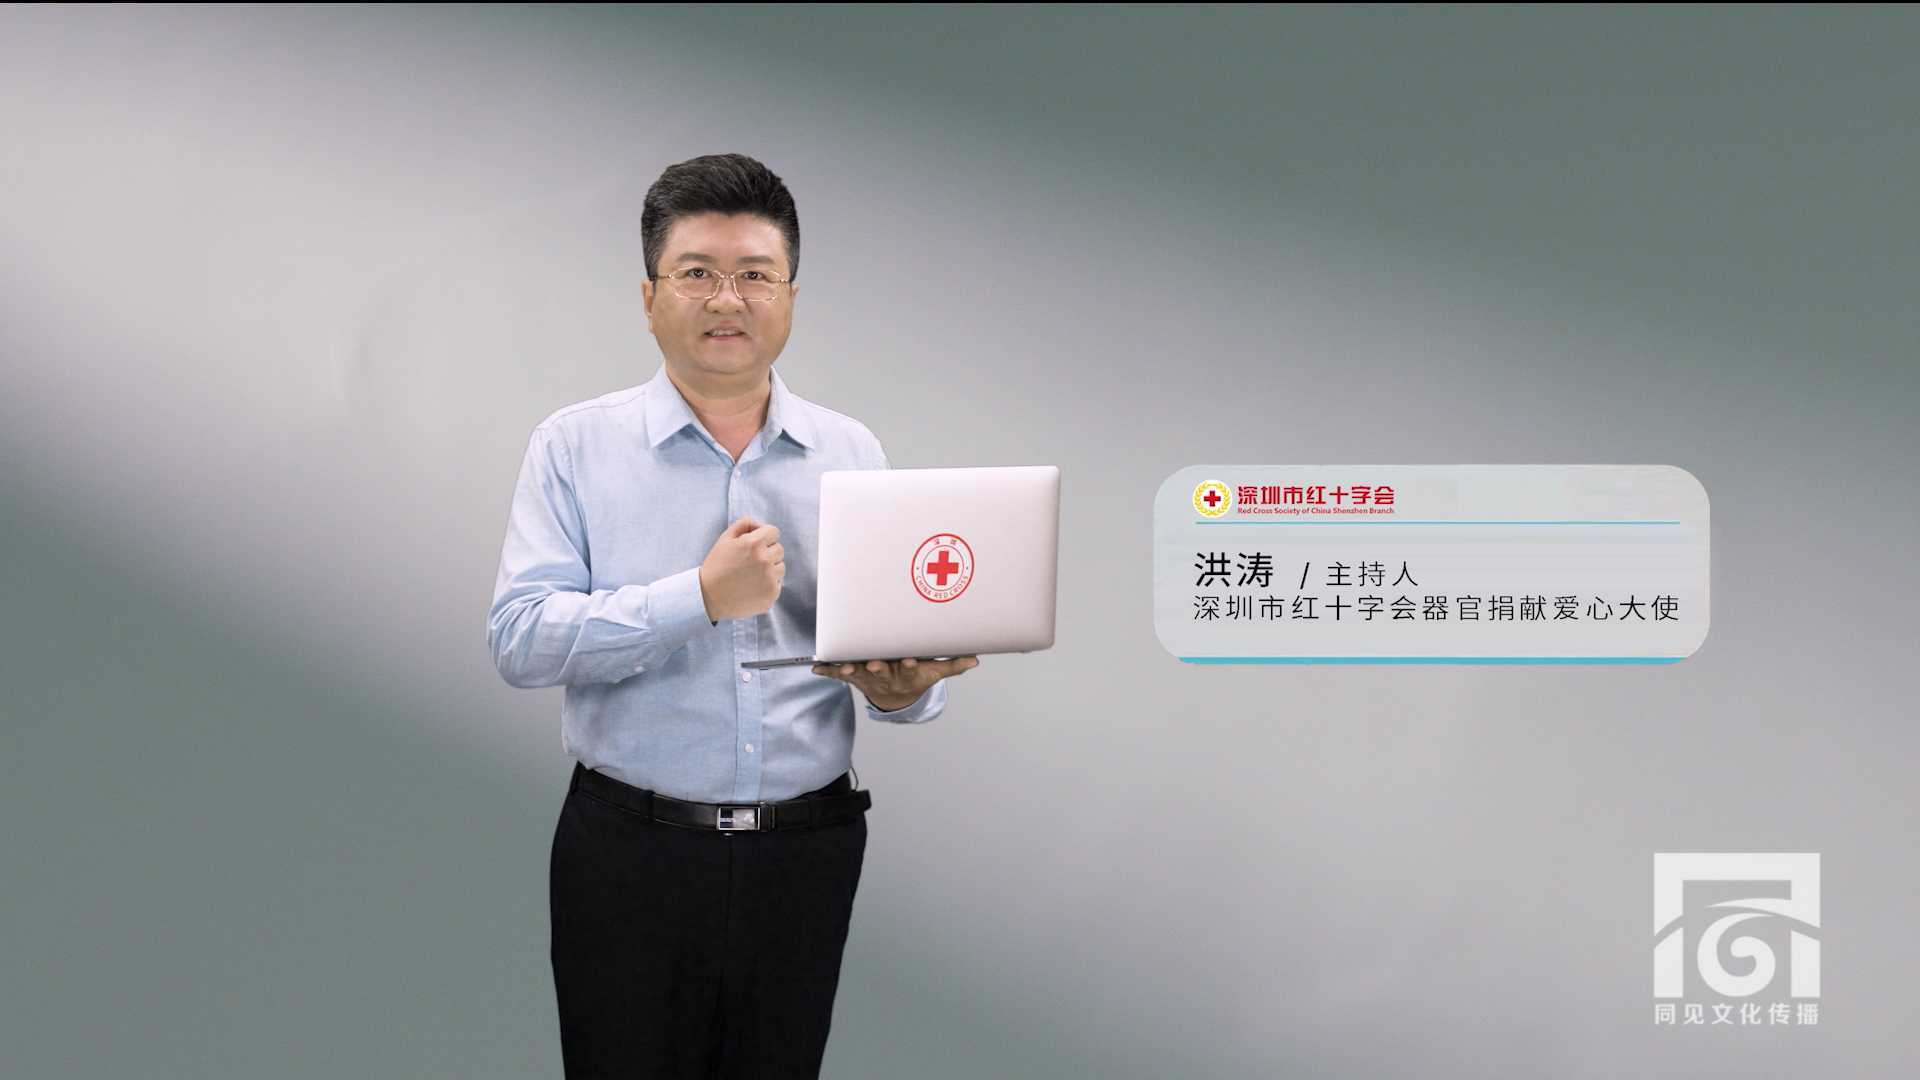 深圳市红十字会器官捐献公益广告宣传片